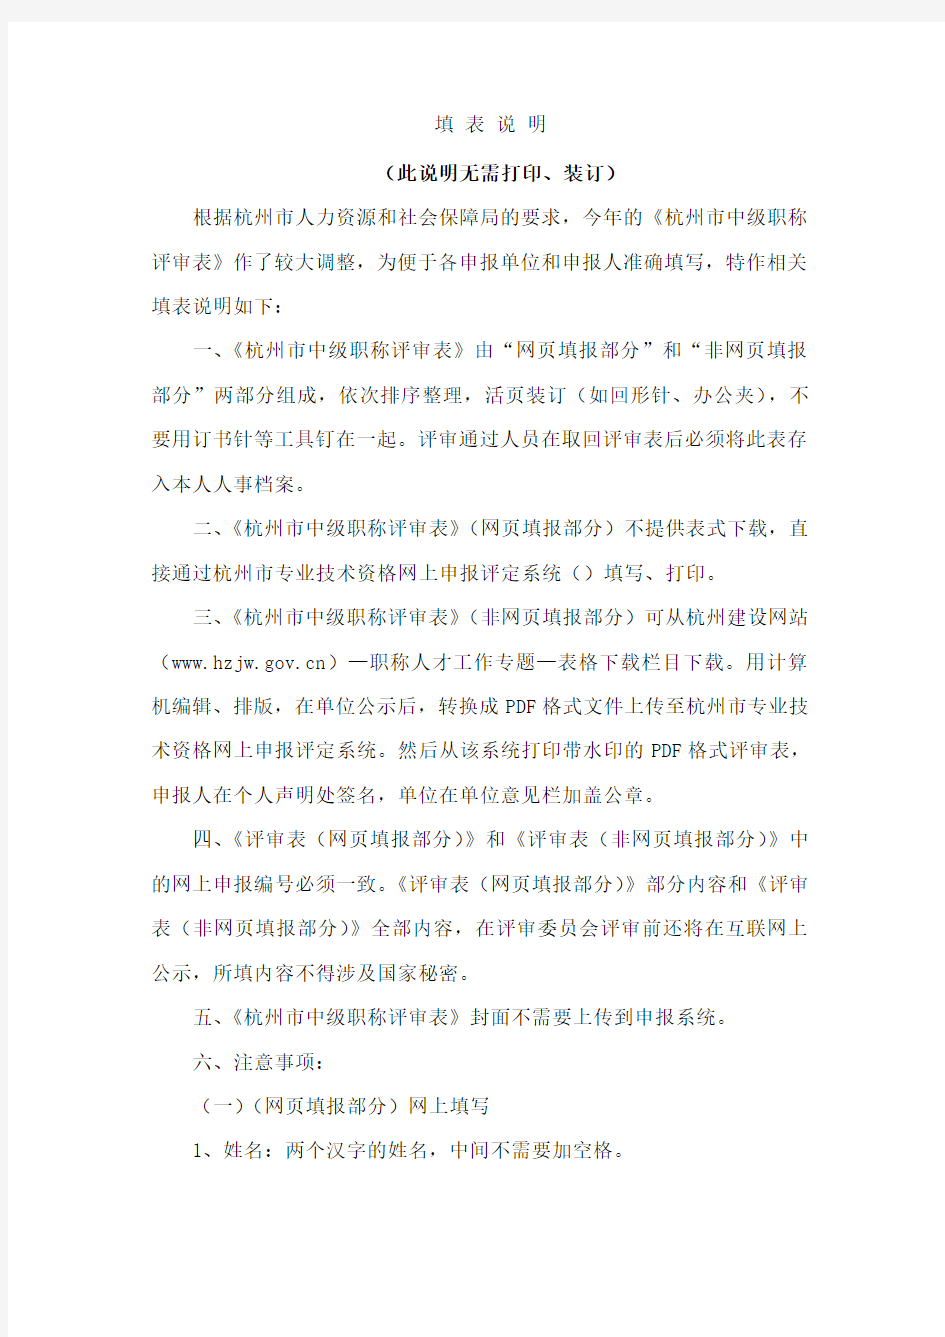 《杭州市中级职称评审表—非网填报部分》含评审表封面和填表说明